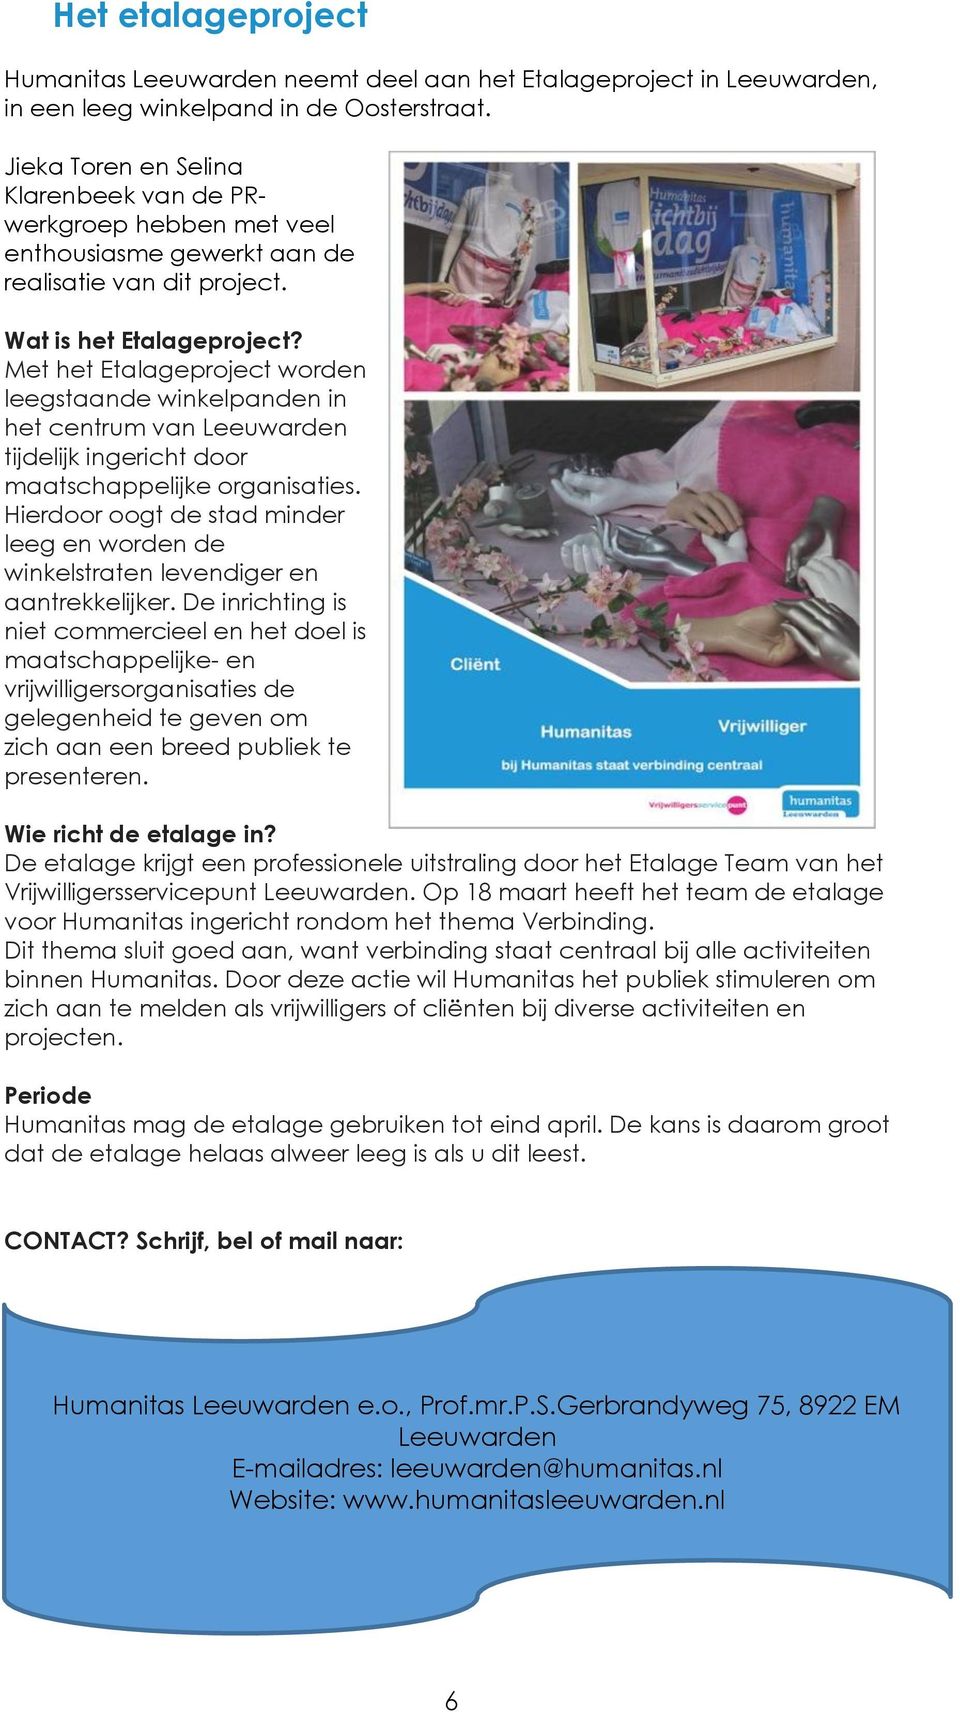 Met het Etalageproject worden leegstaande winkelpanden in het centrum van Leeuwarden tijdelijk ingericht door maatschappelijke organisaties.